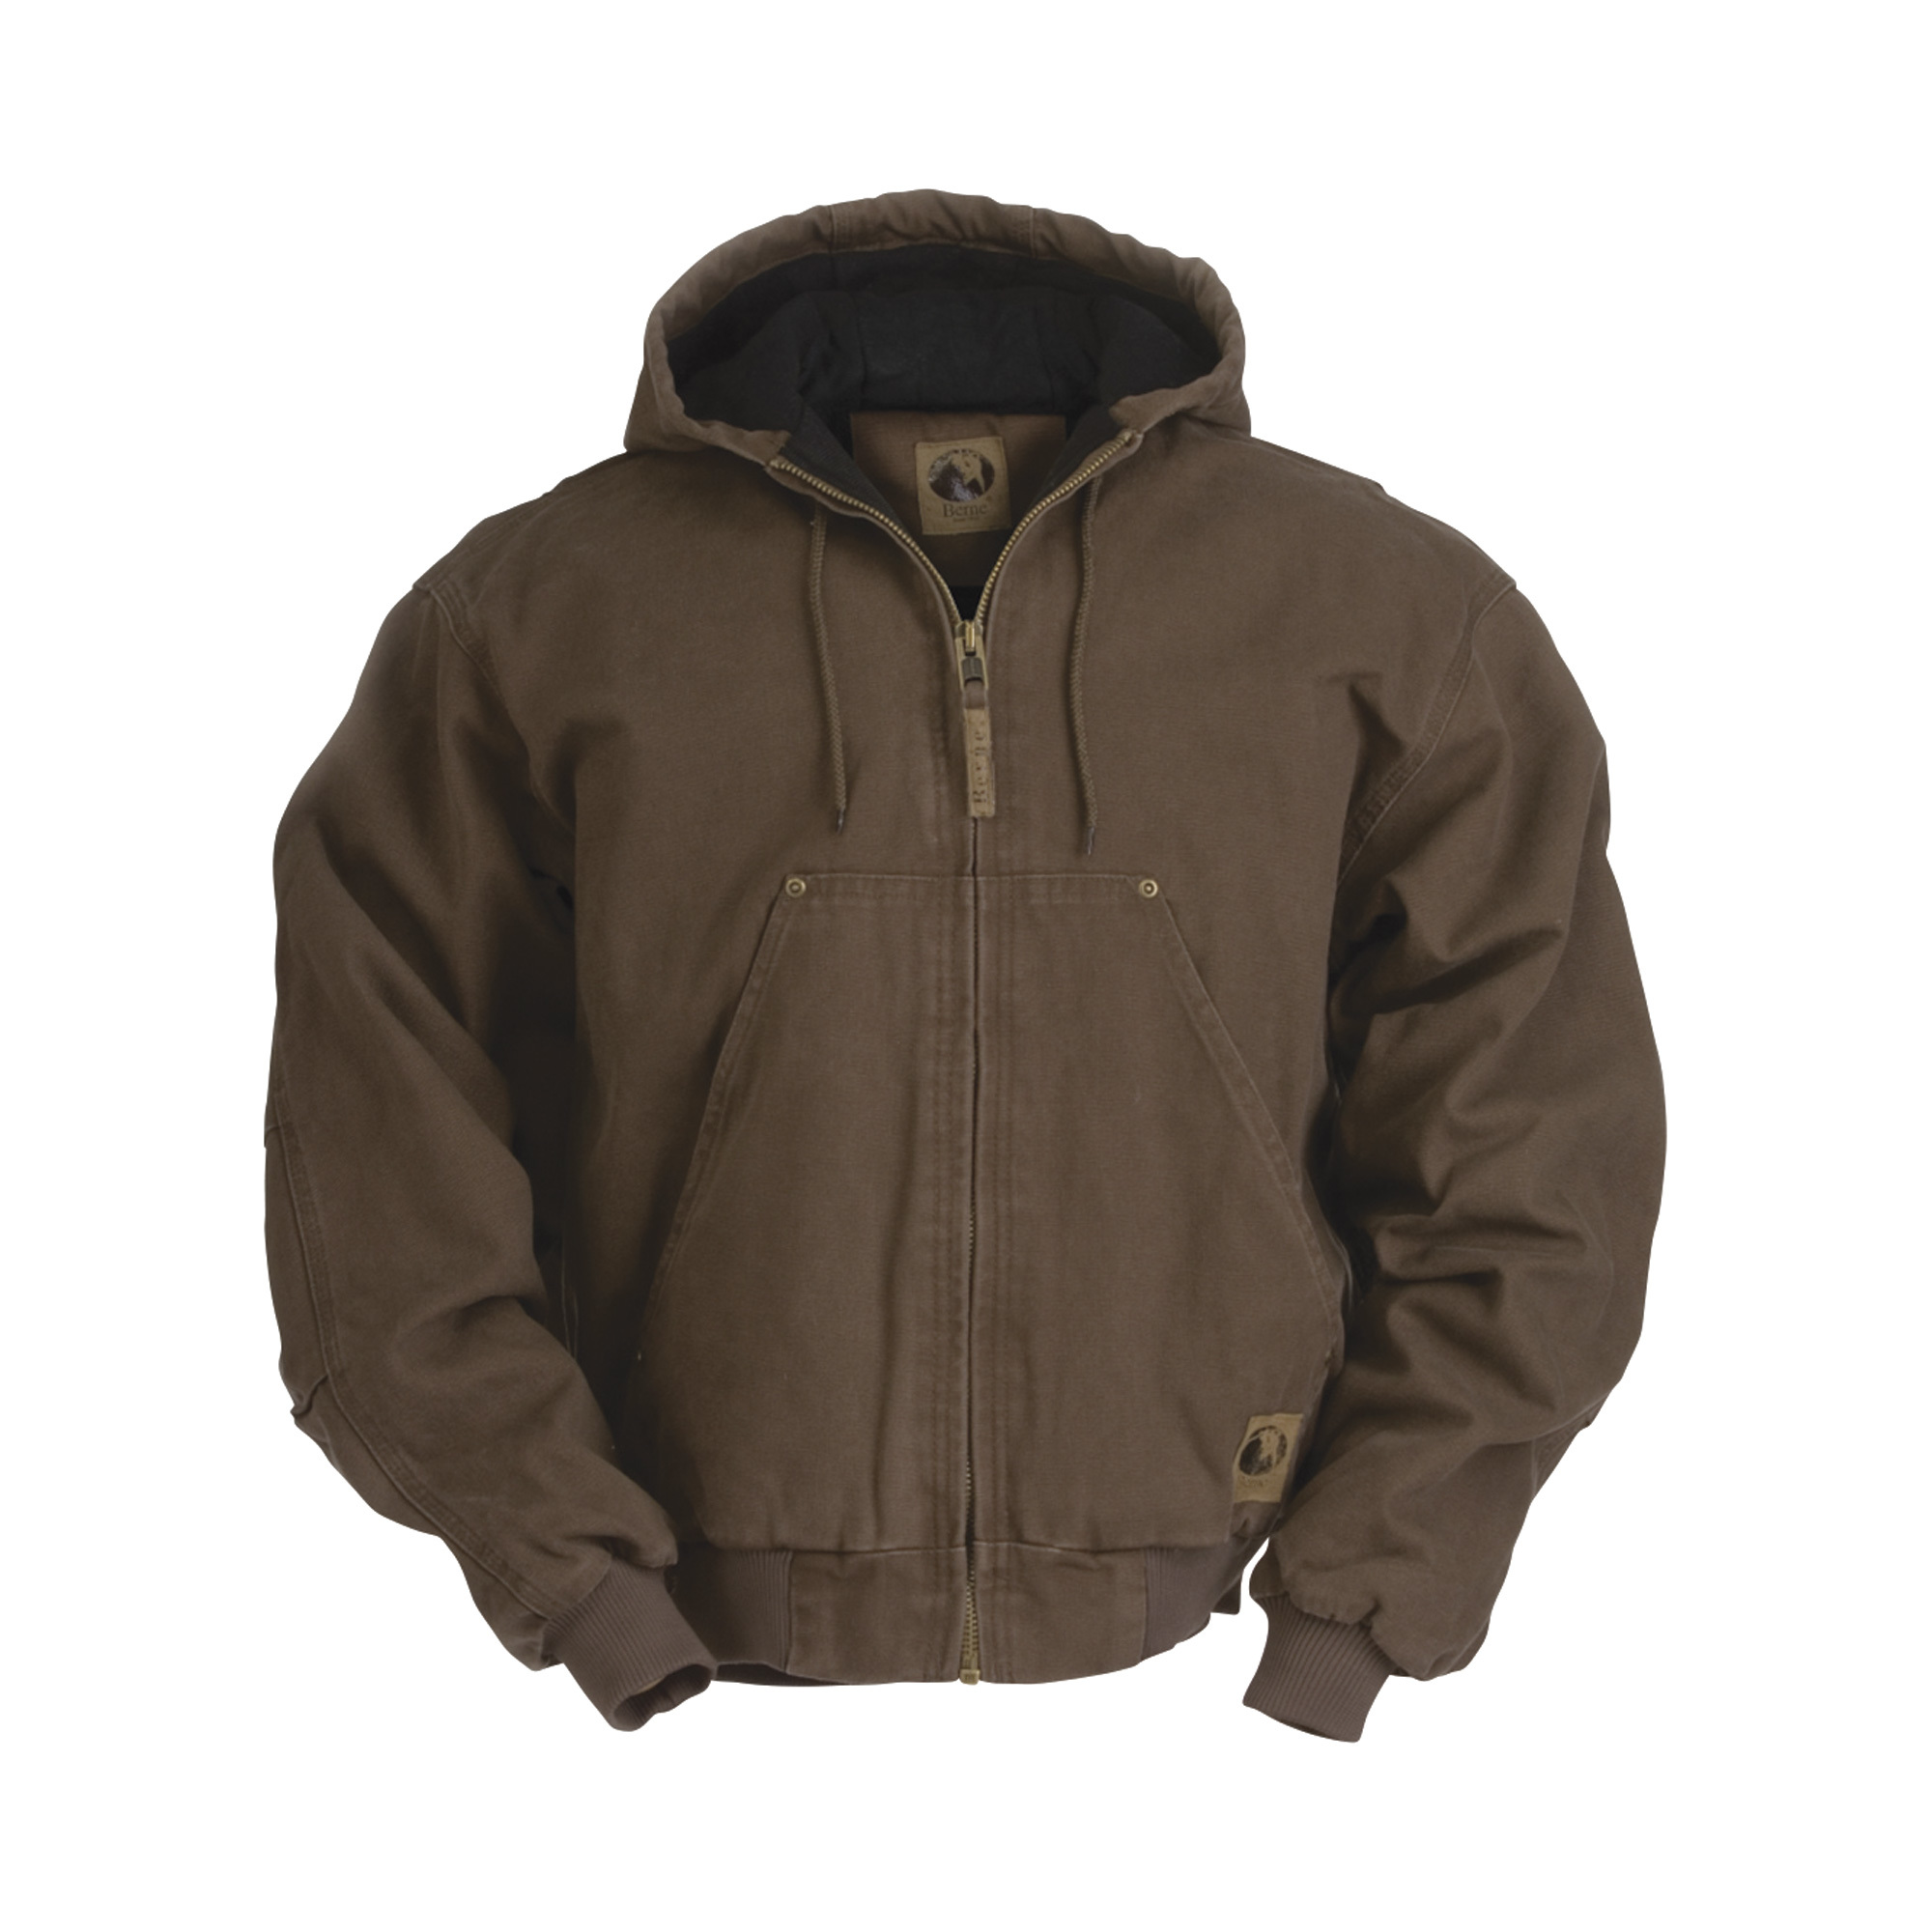 Berne Men's Original Washed Hooded Jacket - Quilt Lined, Bark, XL Tall, Model HJ375BBT480